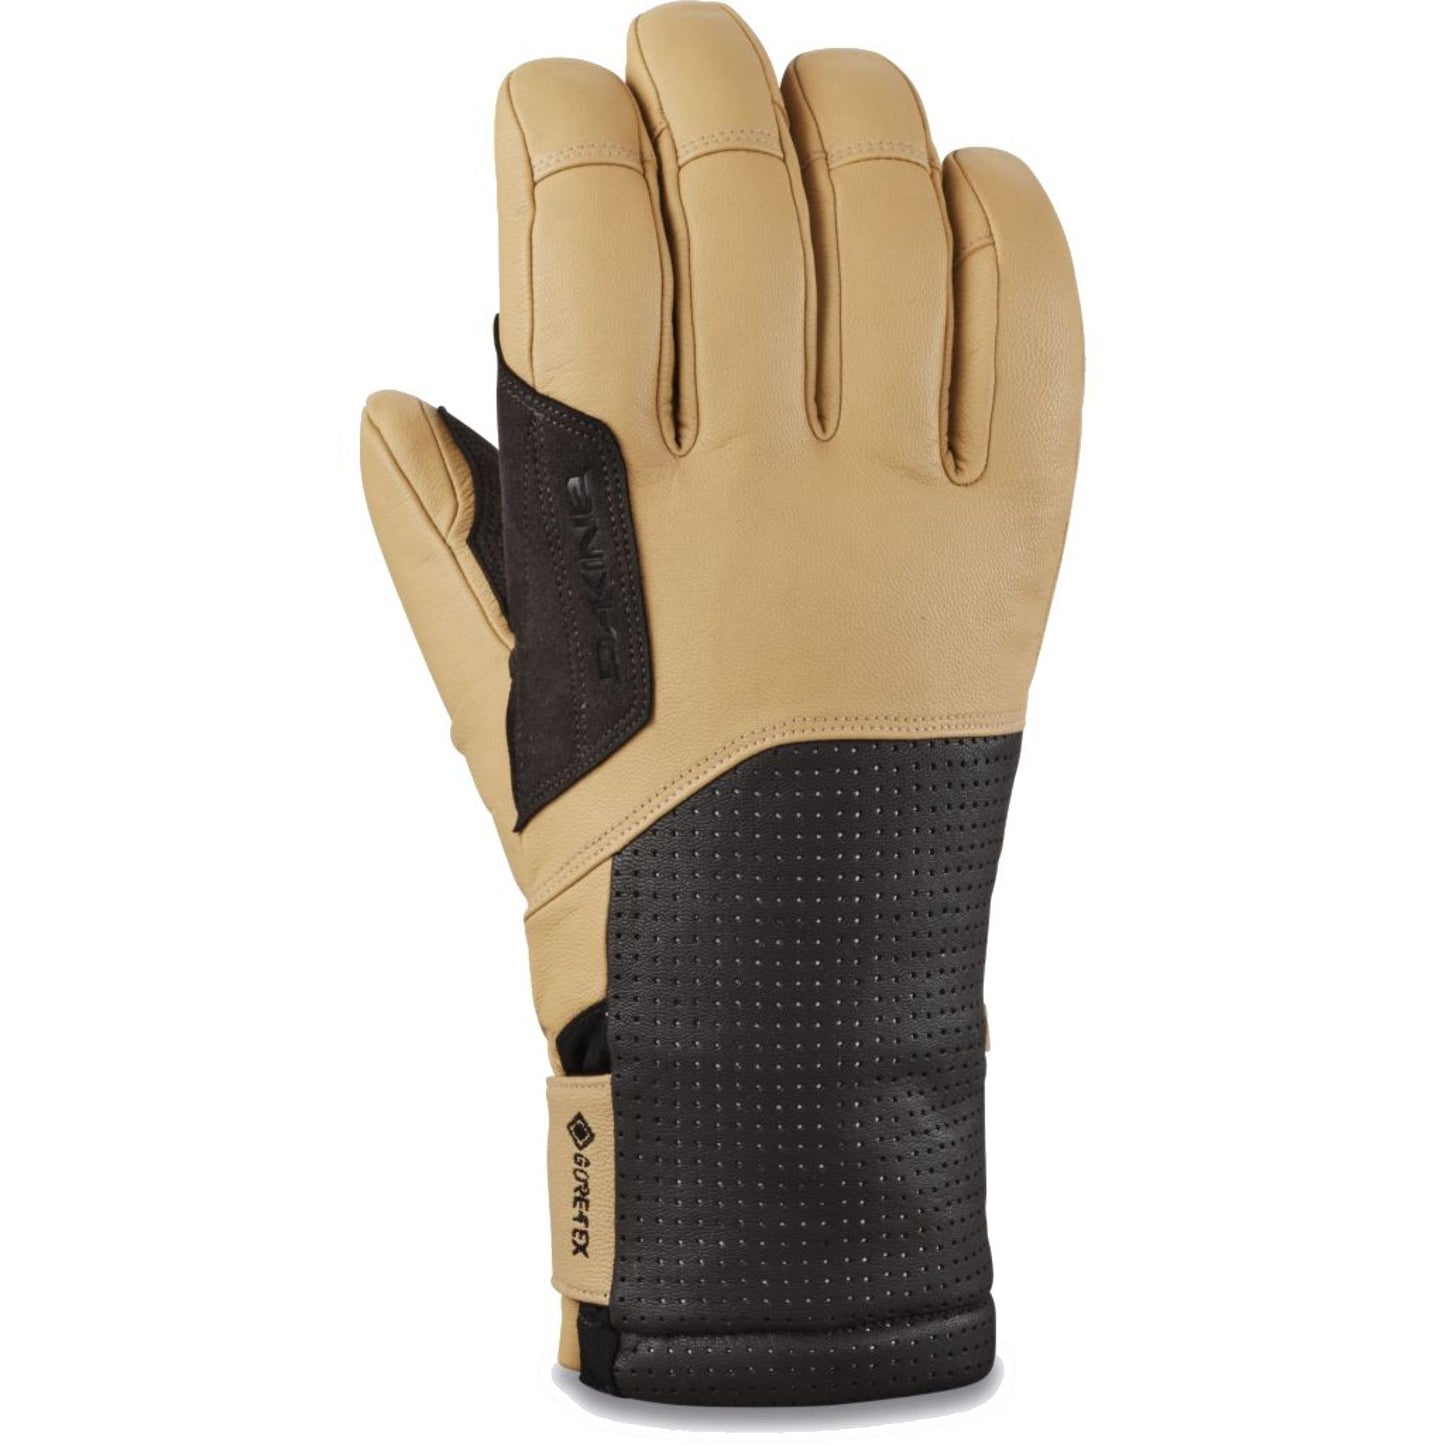 Dakine Kodiak GORE-TEX Glove Tan - Dakine Snow Gloves